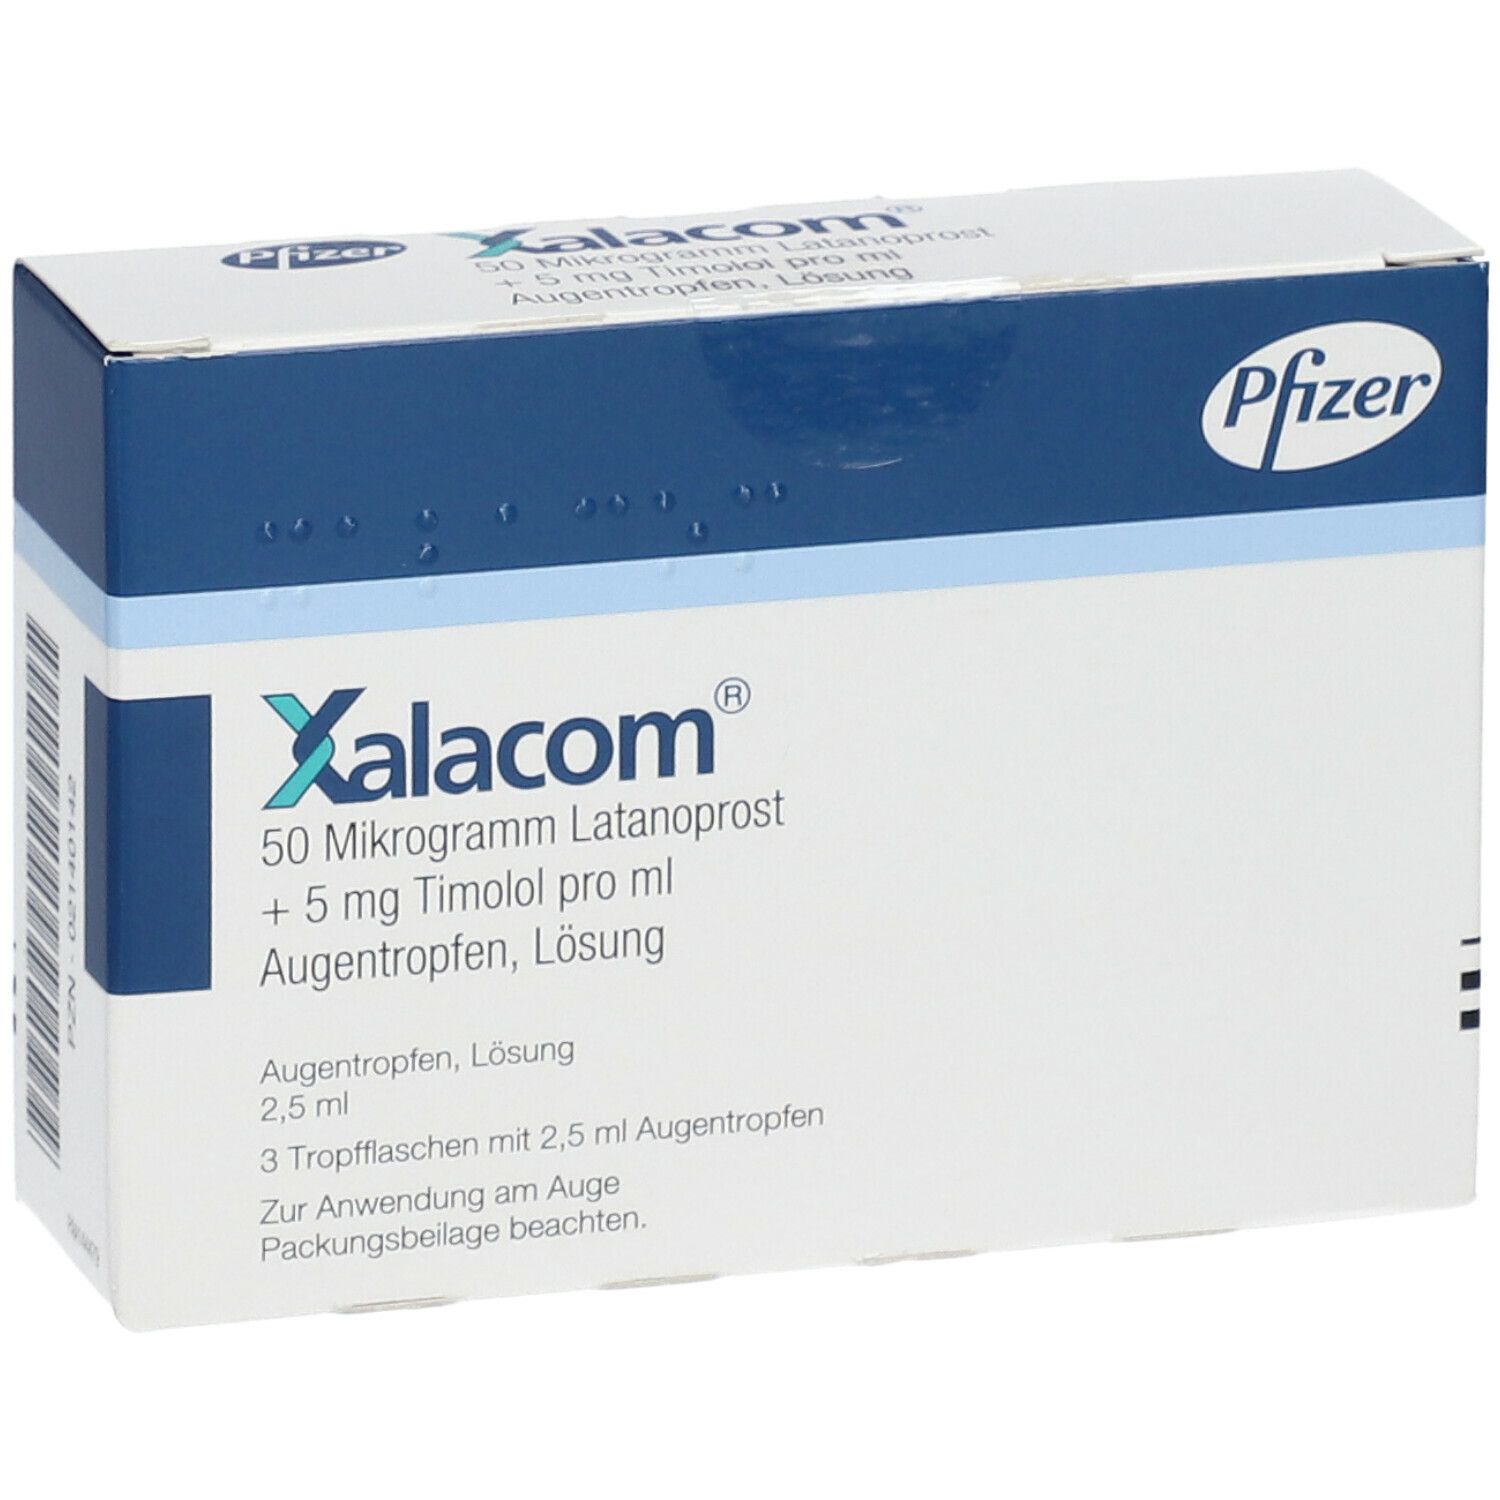 Xalacom® 50 µg Latanoprost + 5 mg Timolol pro ml